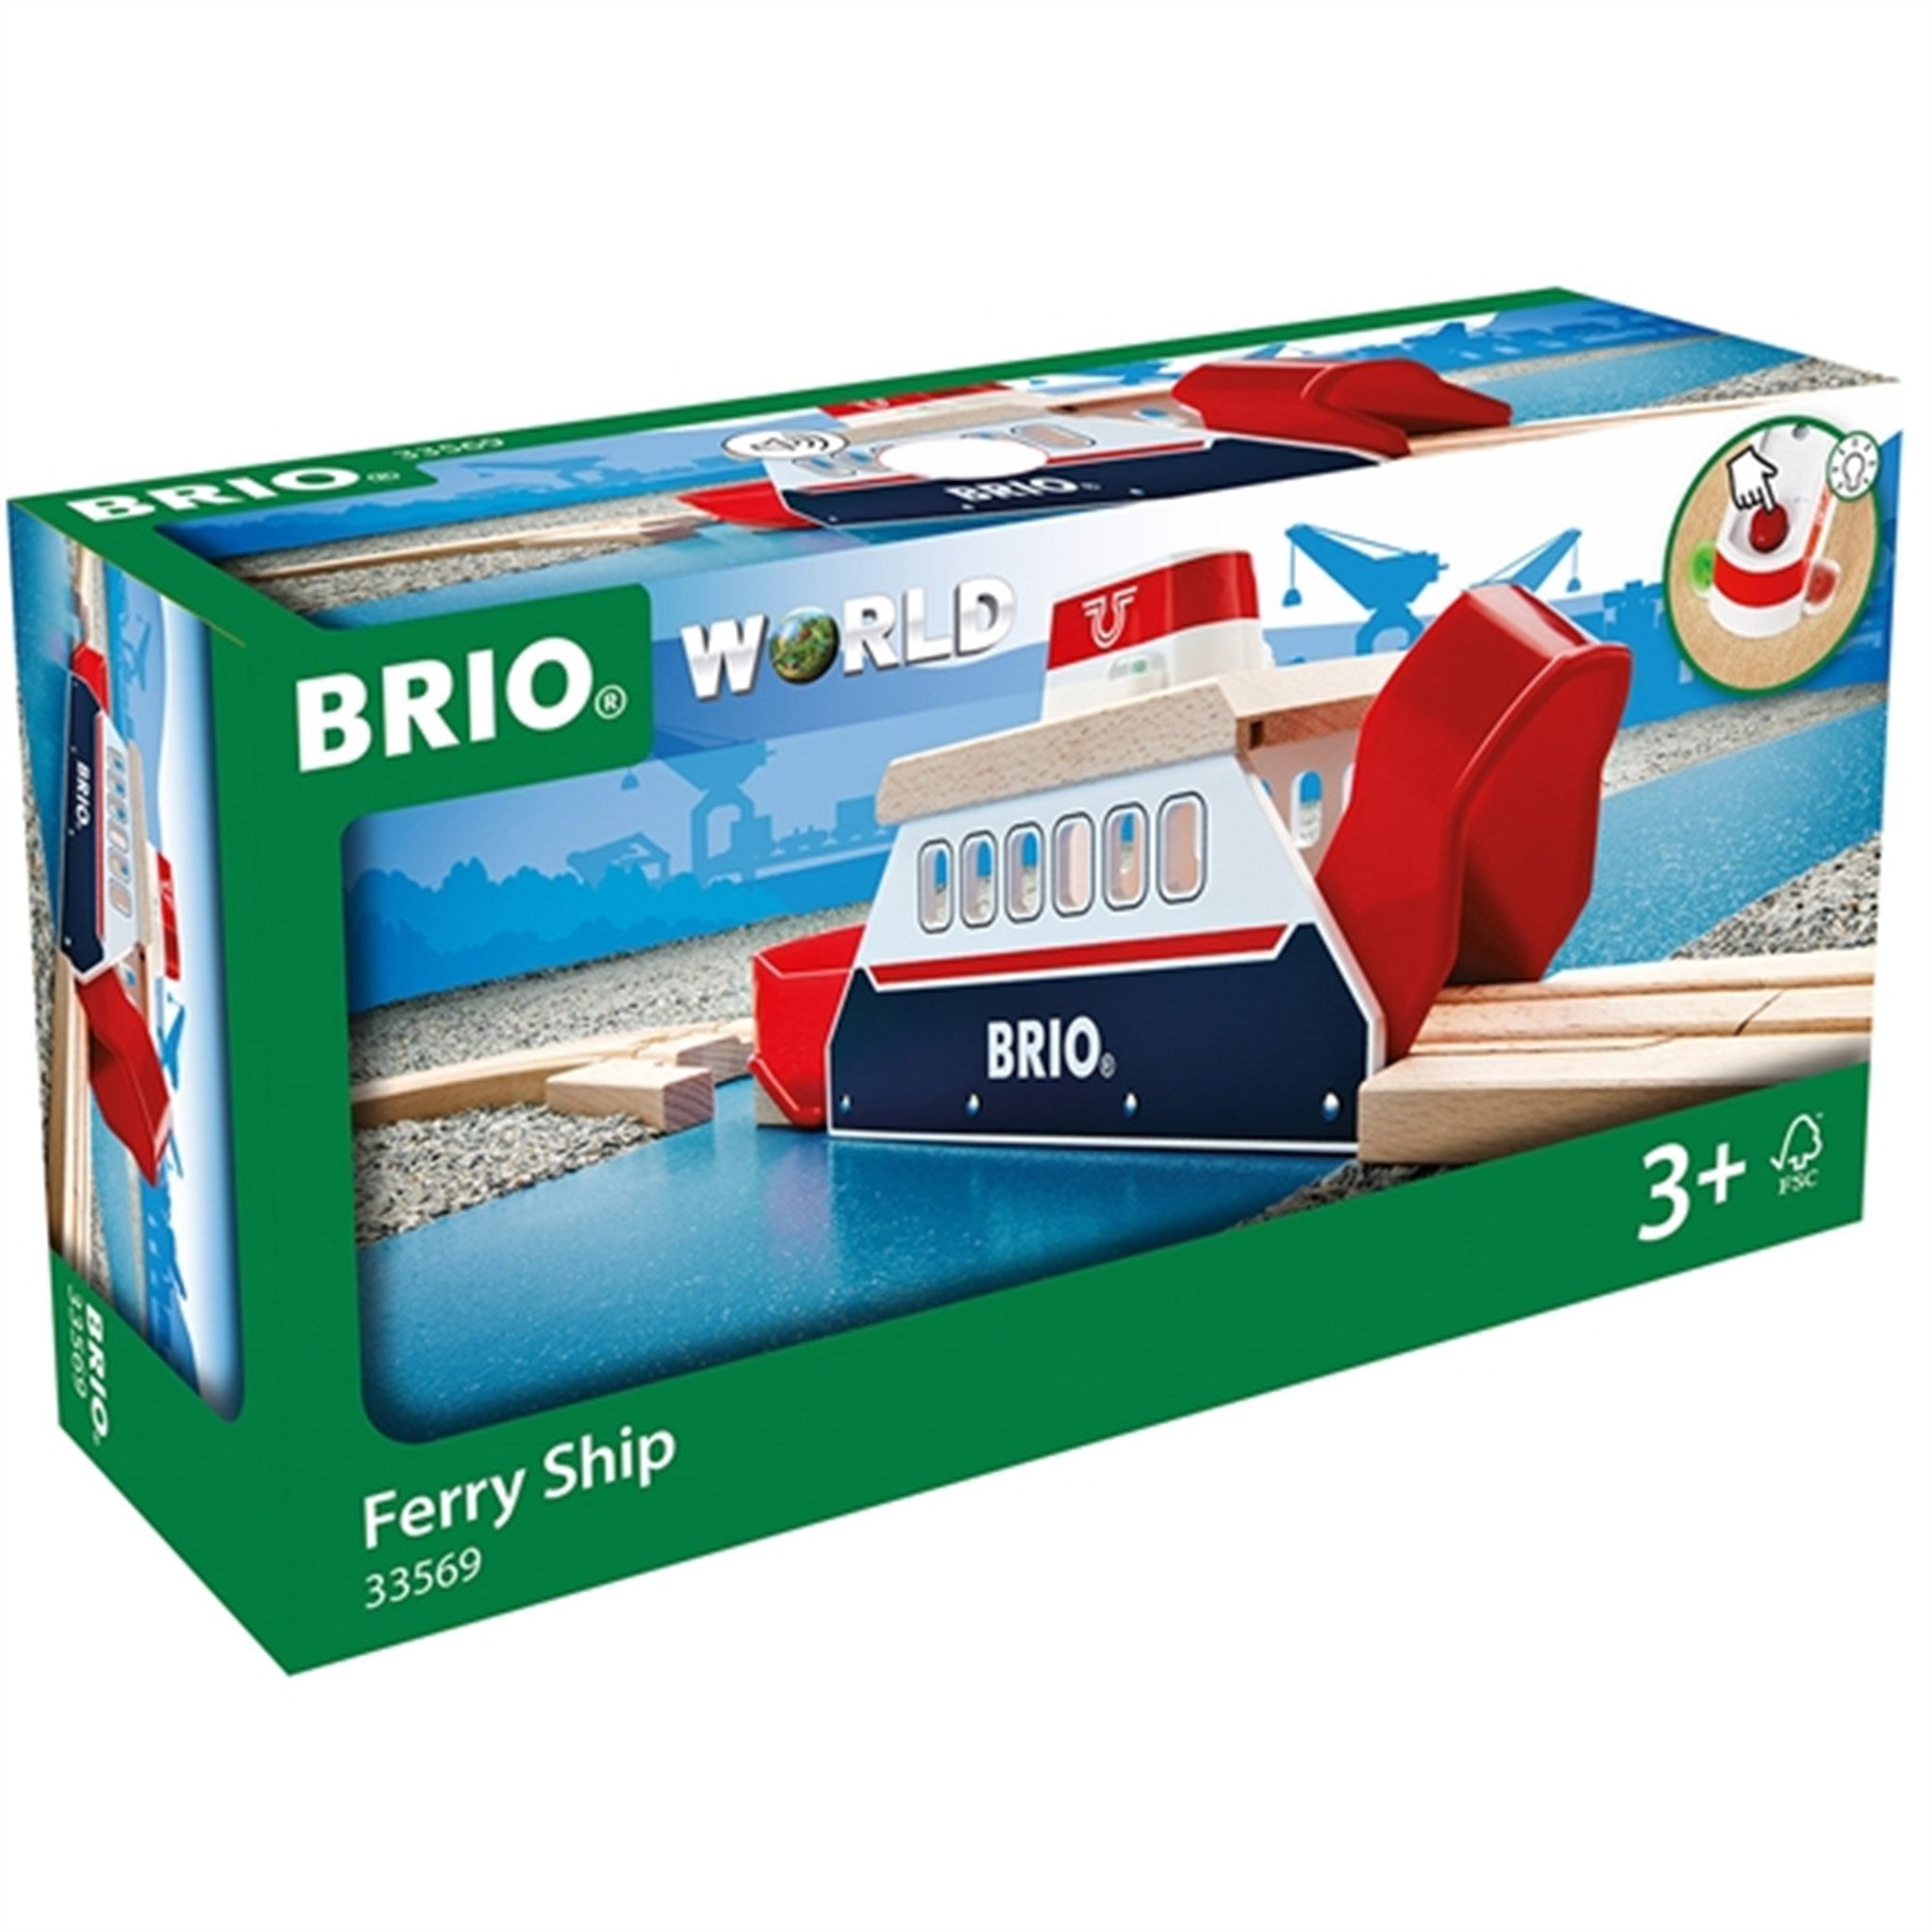 BRIO® Ferry Ship 2